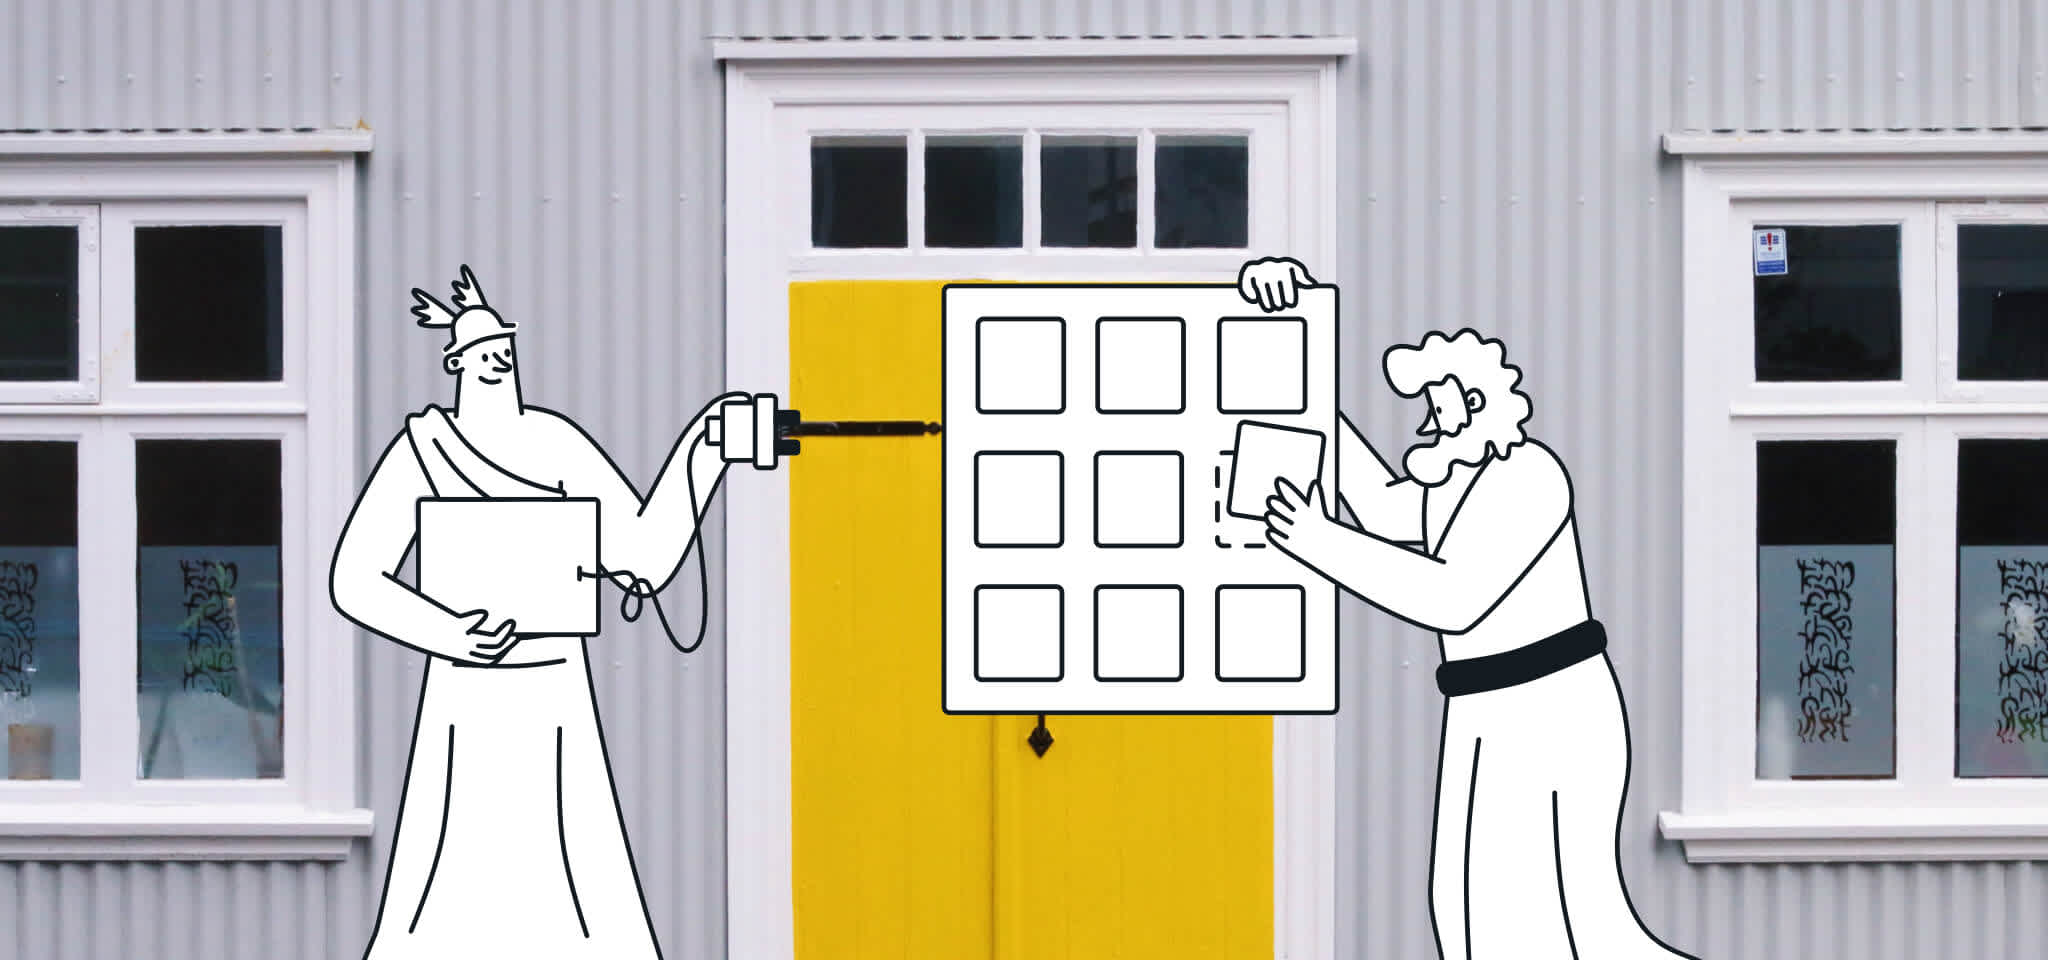 Dioses juntando cosas frente a una puerta amarilla